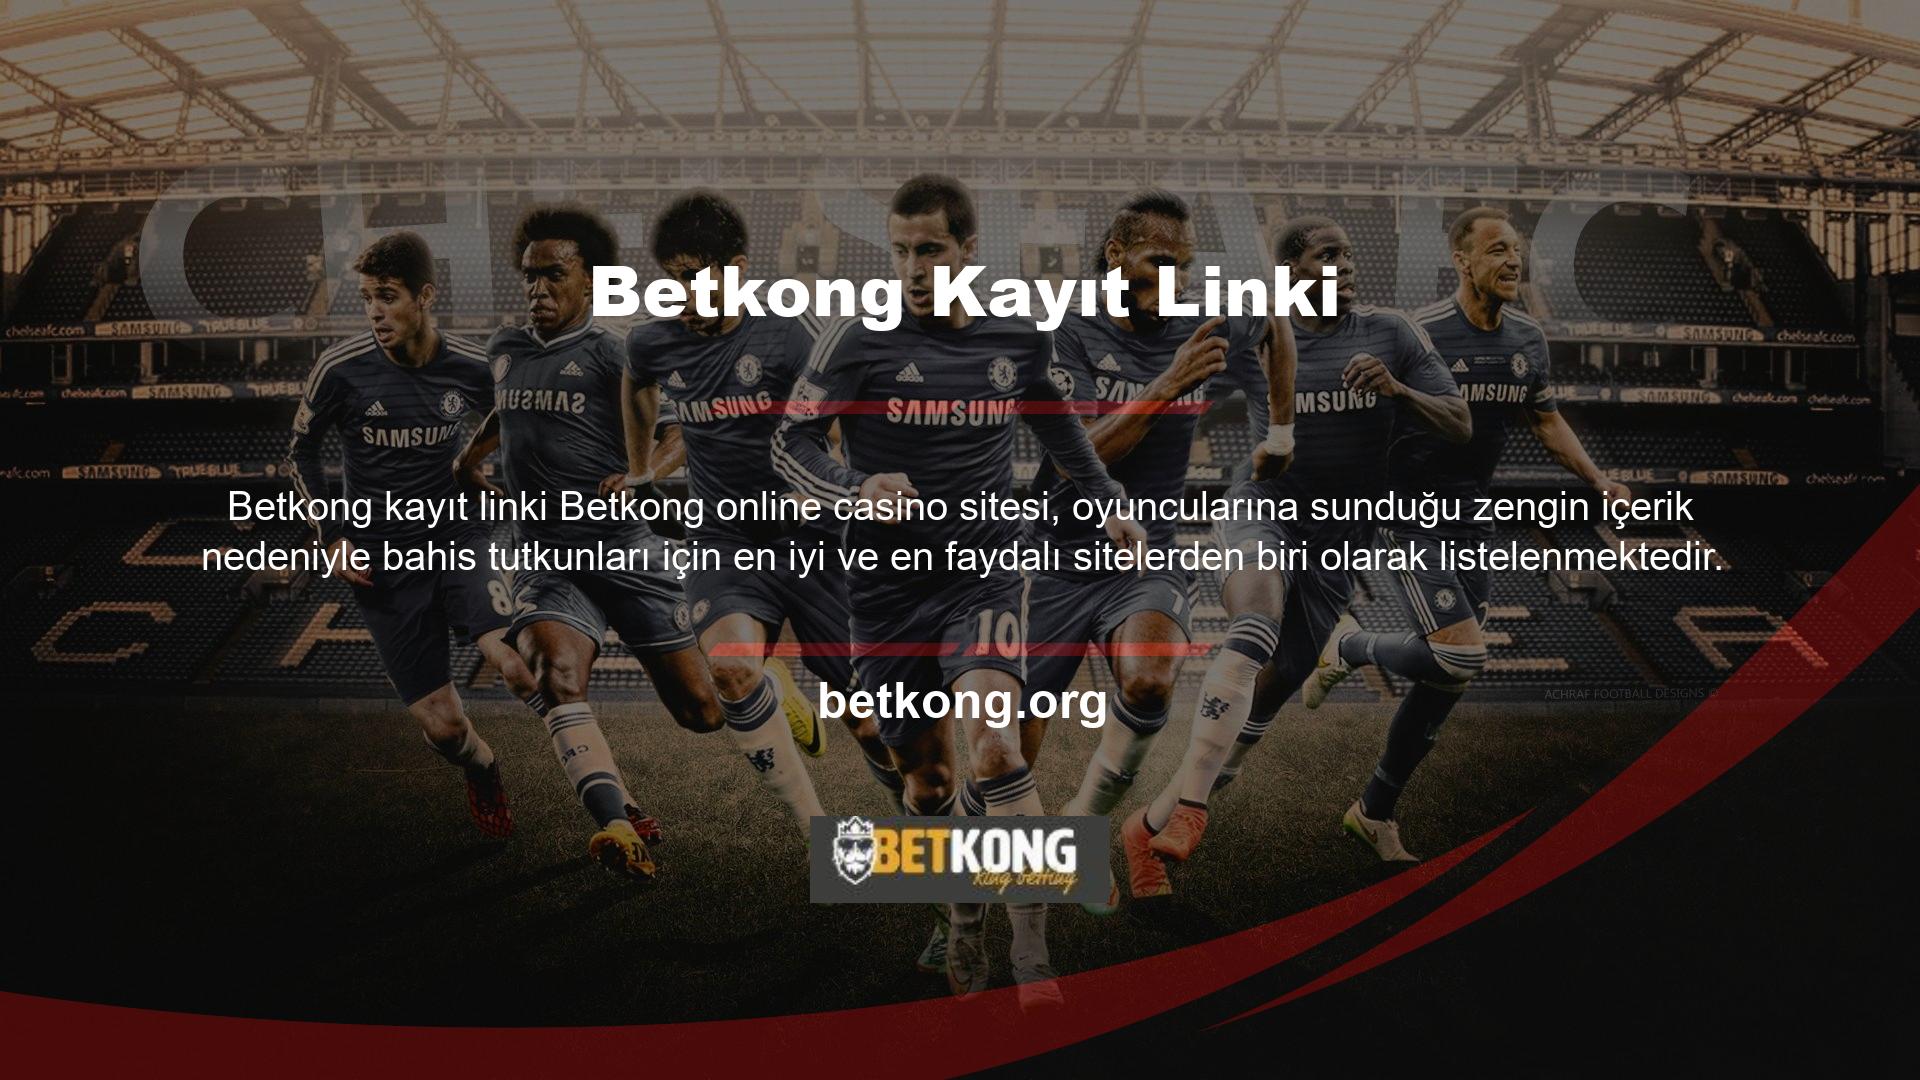 Betkong giriş linki, spor bahisleri başta olmak üzere Asya, Avrupa, İtalya, Türkiye, UEFA ve daha birçok ligde canlı bahis başta olmak üzere binlerce farklı bahis oyununu sunan, üyelerine benzersiz bir çeşitlilik sunan bir çevrimiçi bahis sitesidir